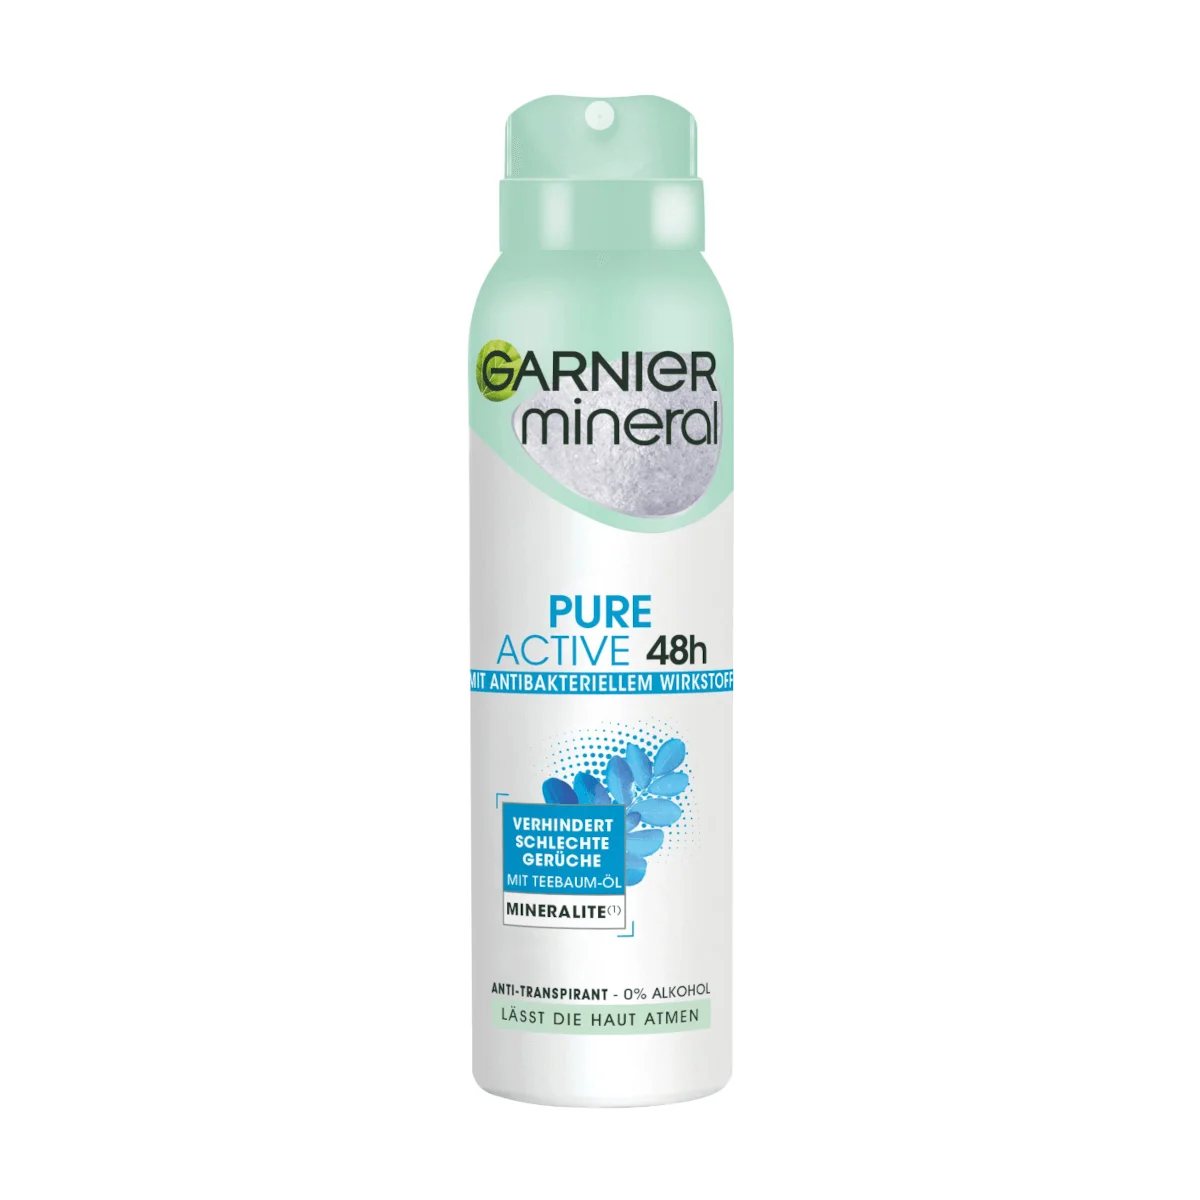 Garnier Mineral Deospray Pure Active Antibakteriell Antitranspirant, 150 ml